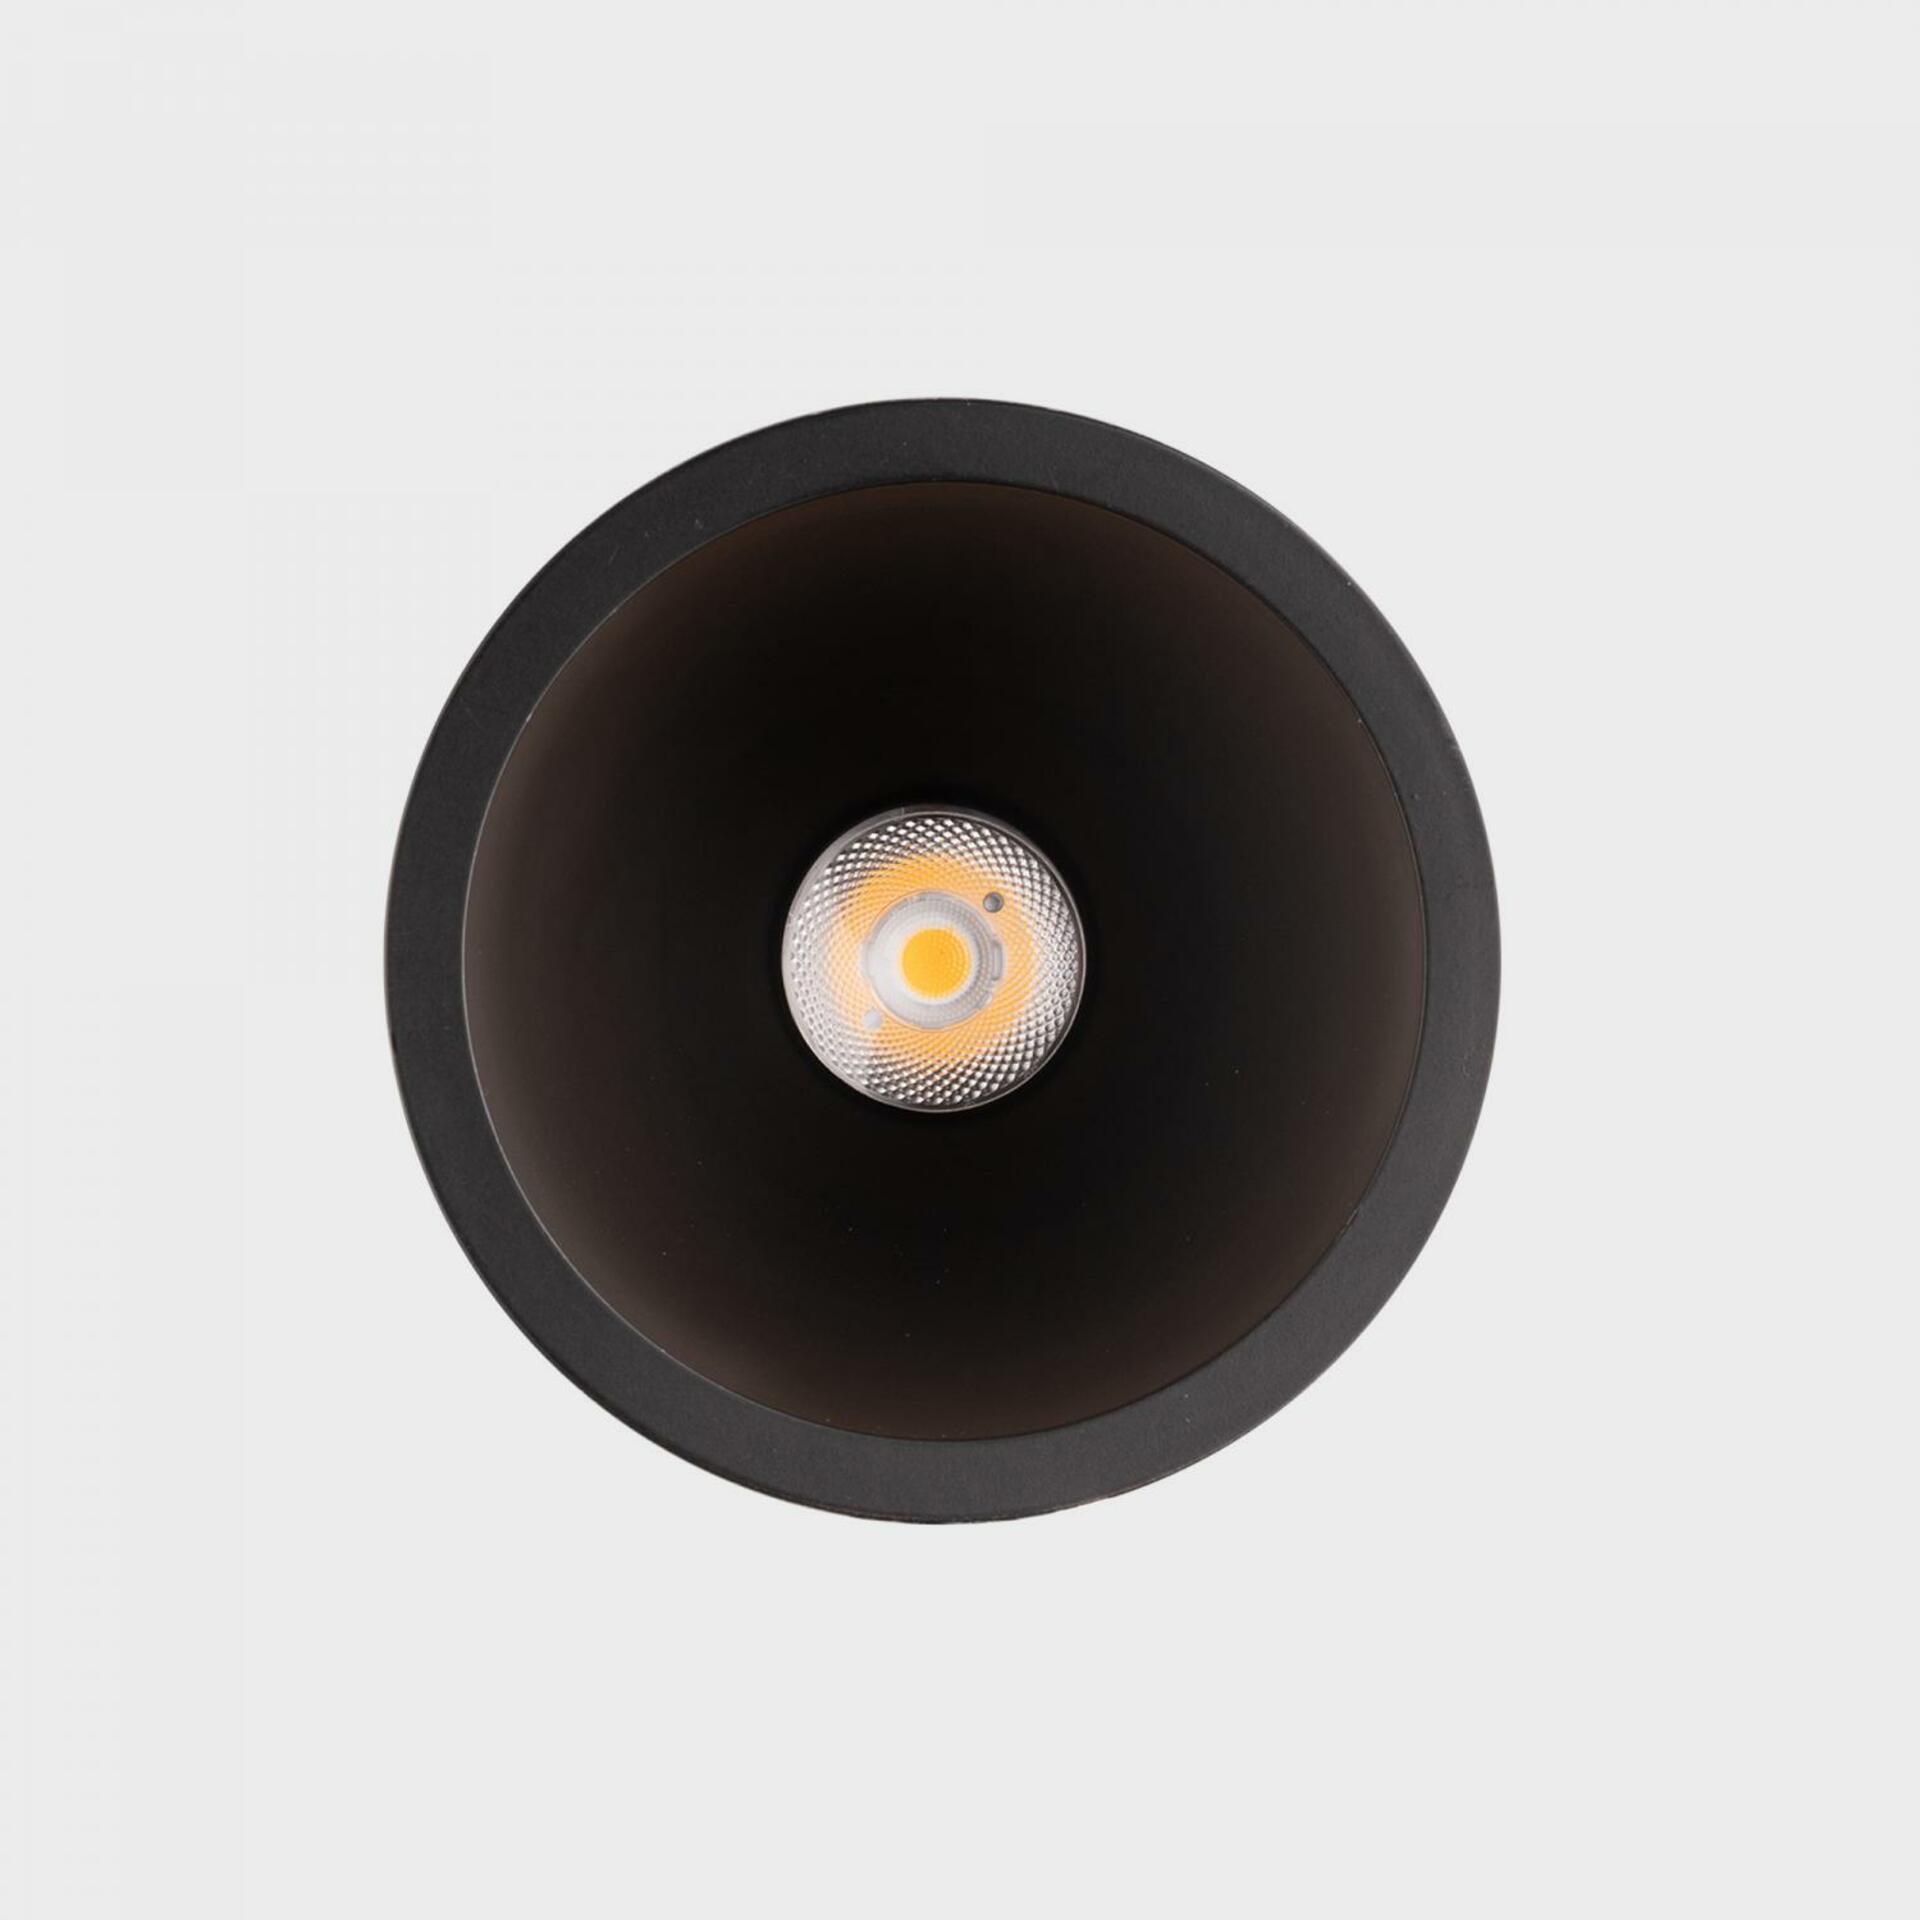 KOHL LIGHTING KOHL-Lighting NOON zapuštěné svítidlo s rámečkem pr.93 mm černá 38° 10 W  CRI 80 3000K DALI